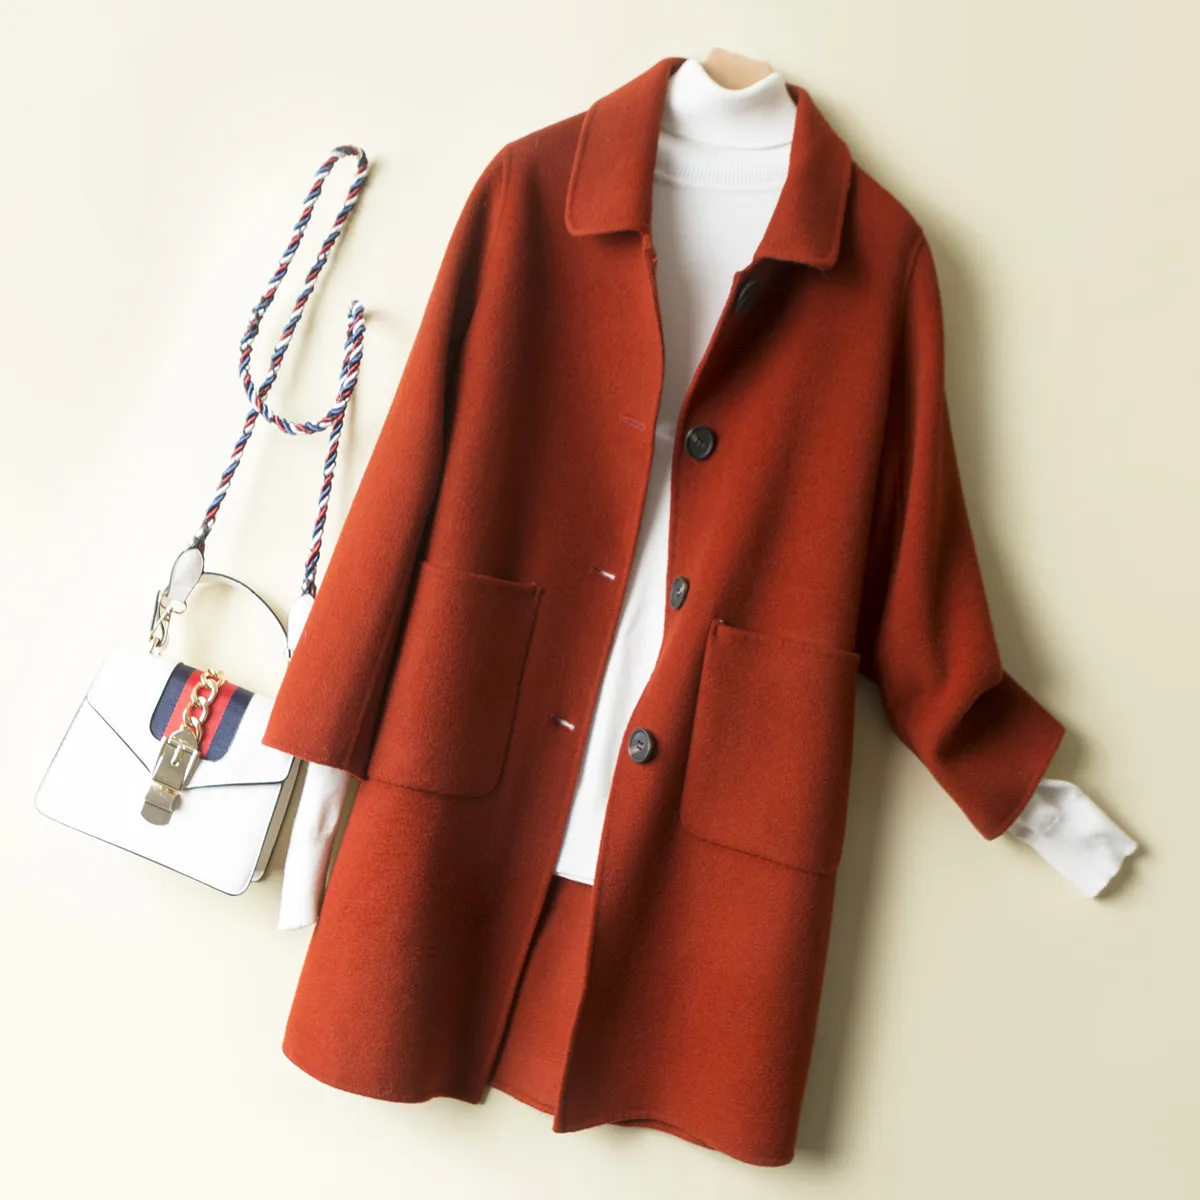 AYUNSUE новое шерстяное пальто для женщин Весна Осень двухстороннее длинное пальто черный желтый жакет корейские женские пальто 0714 KJ2394 - Цвет: Maple red